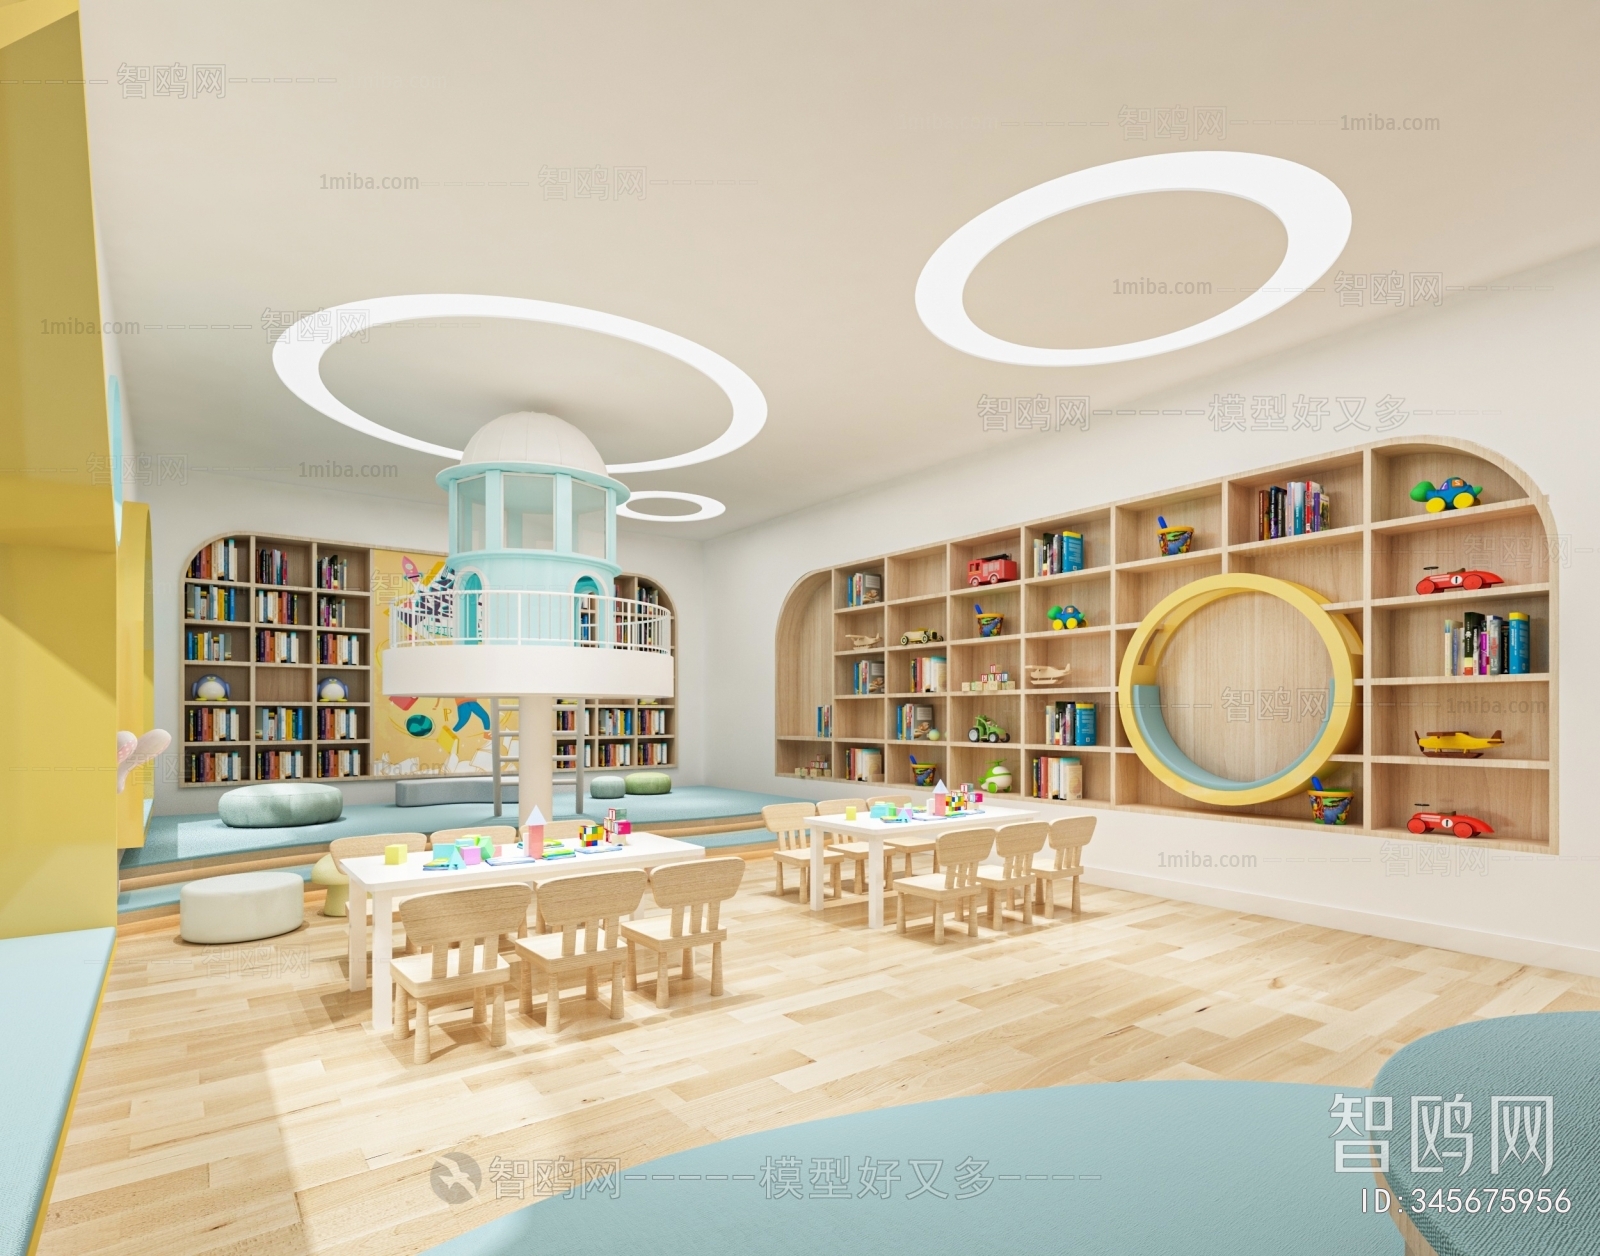 现代幼儿园图书馆